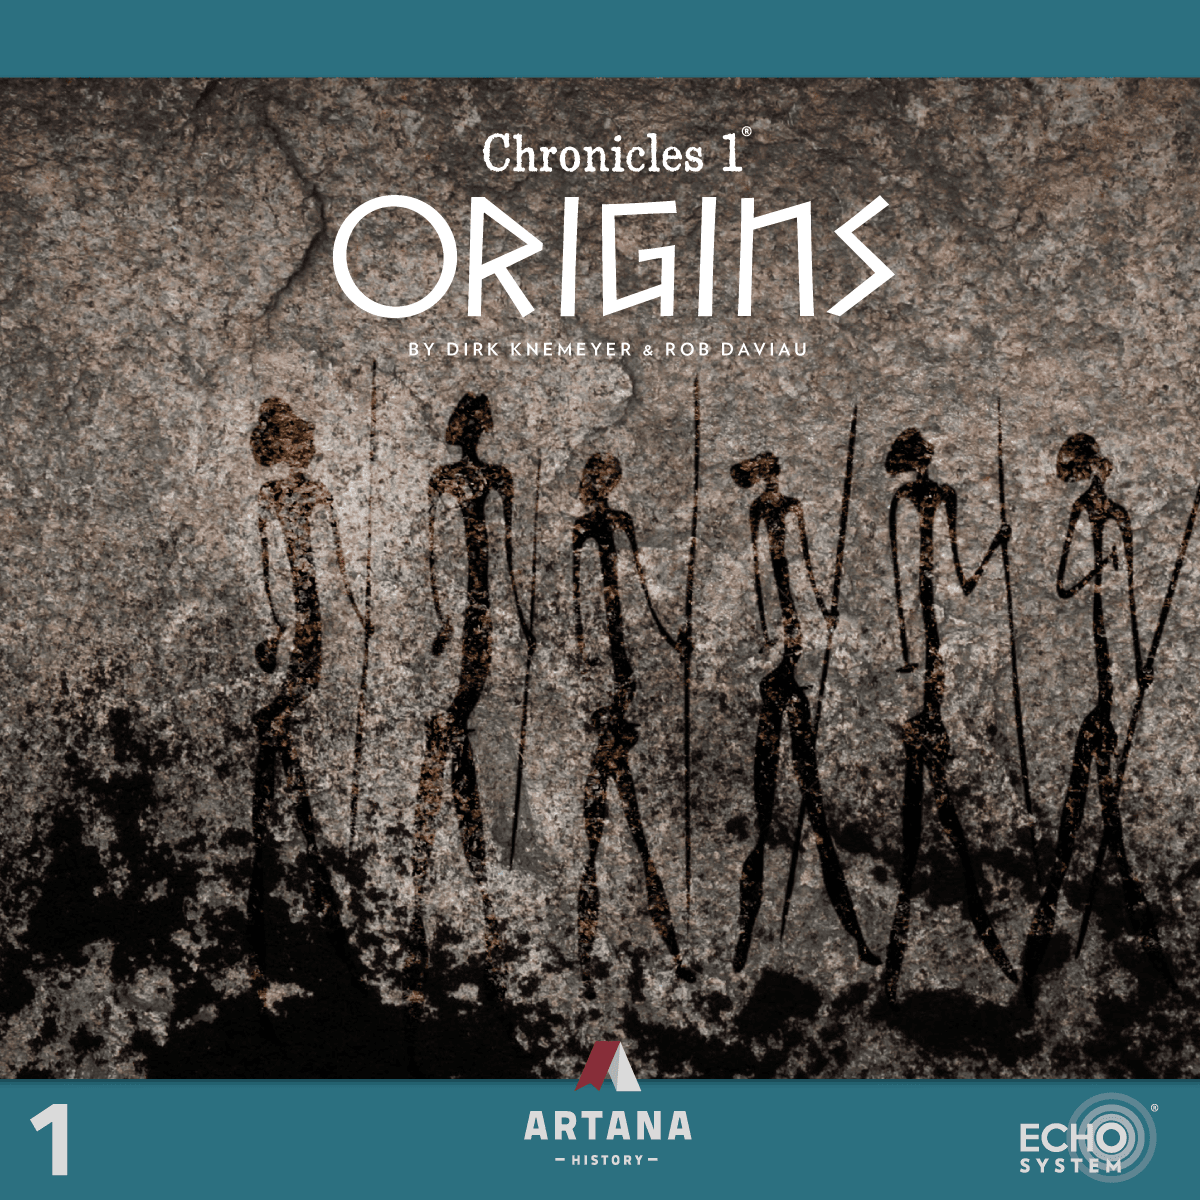 Krønikel 1: Origins (Kickstarter Special) Kickstarter Board Game Artana KS800174A